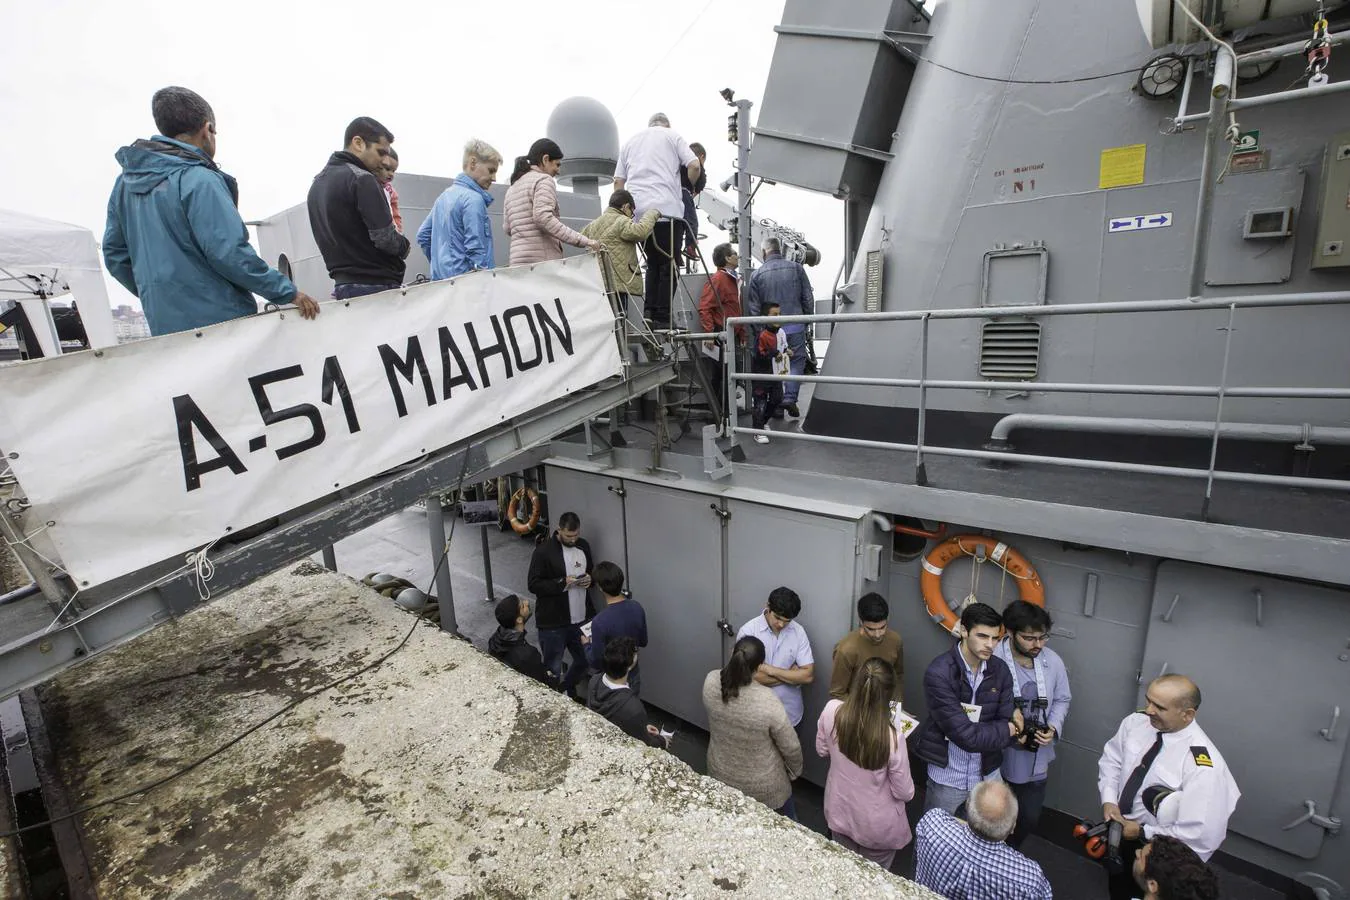 El remolcador de altura de la Armada Española 'Mahón' (A-51) hizo ayer escala en el puerto de Santander. Se trata de un buque con base en la Estación Naval de La Graña, en Ferrol, que cumple 40 años, 36 de ellos trabajando en misiones de vigilancia desde el río Miño hasta el mar Cantábrico, con una dotación de 30 personas a bordo.